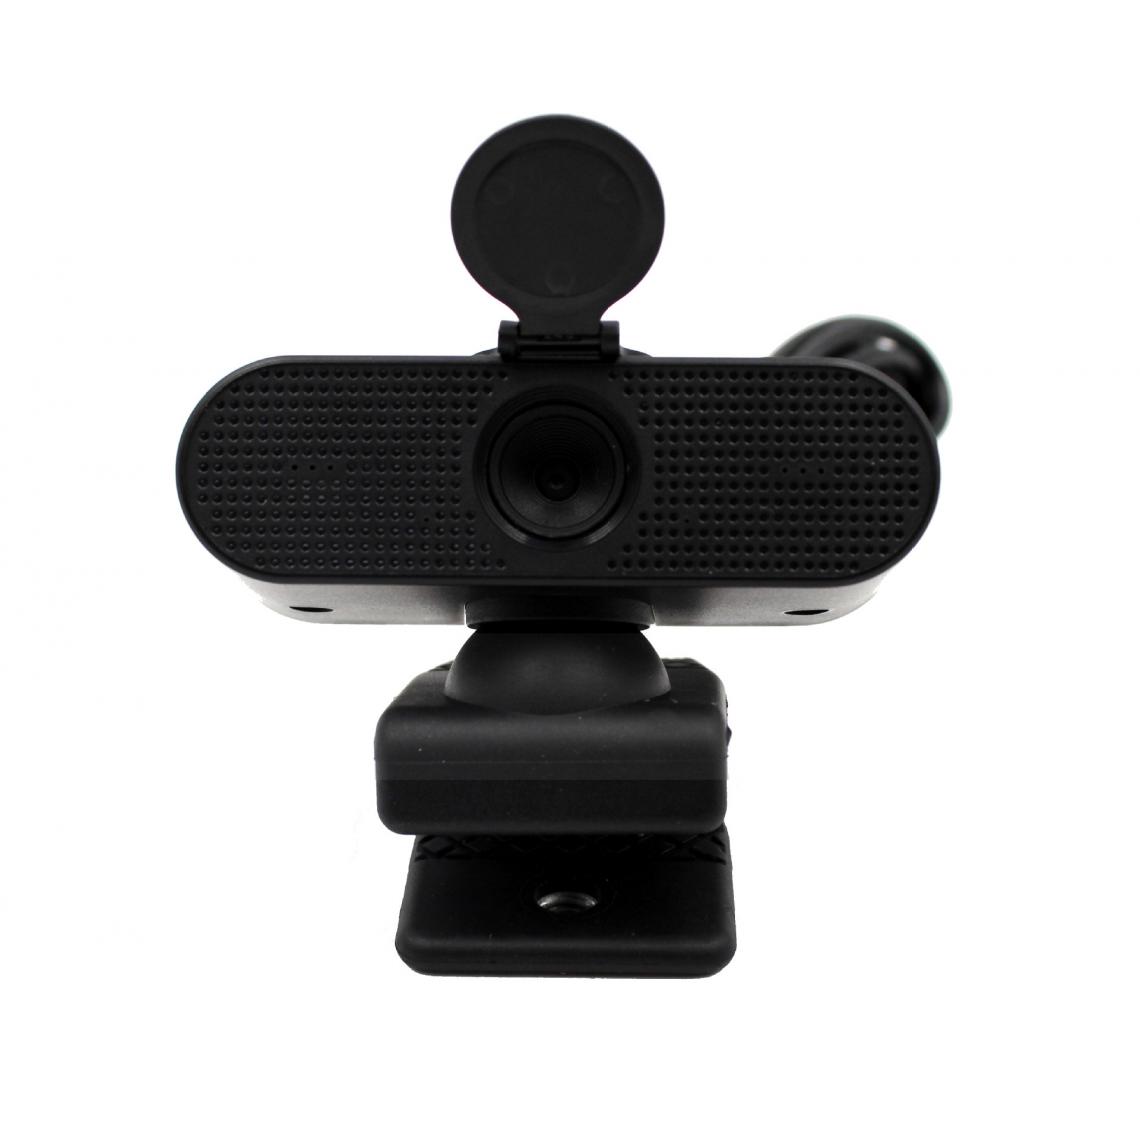 Generic - Caméra d'ordinateur Hd 1080p USB Live Video Webcam - Webcam